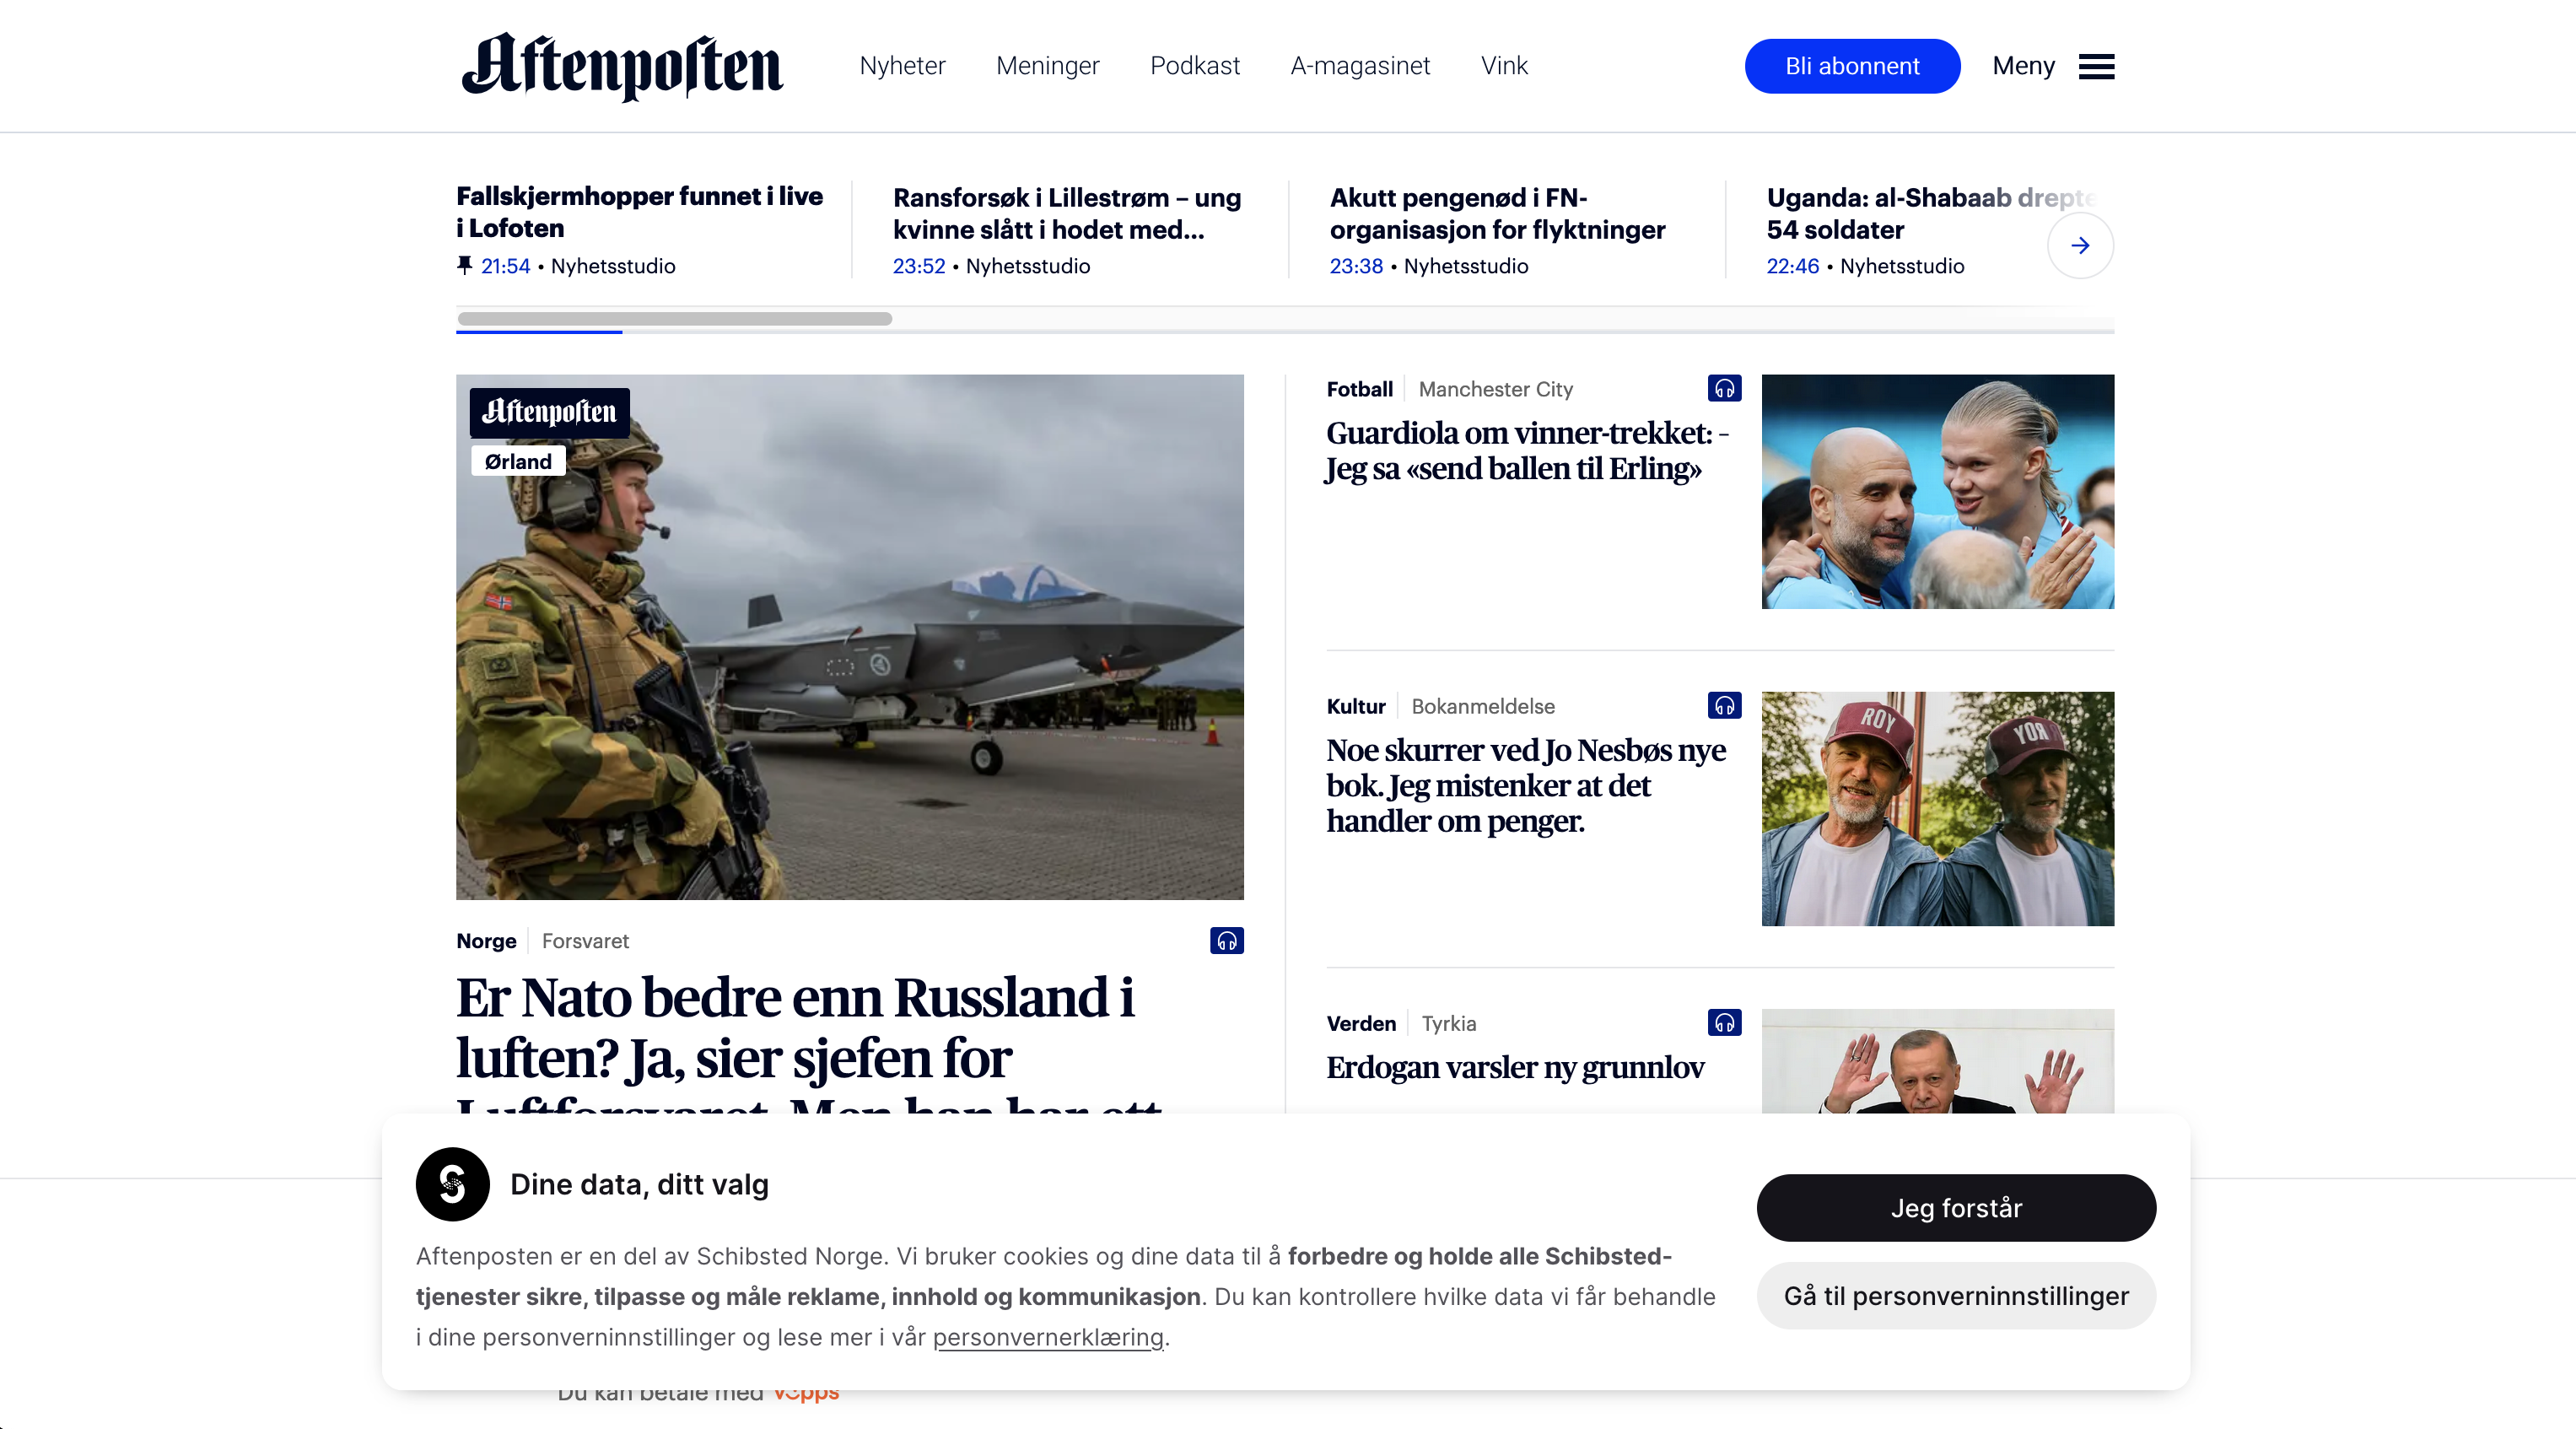 Aftenposten.no website